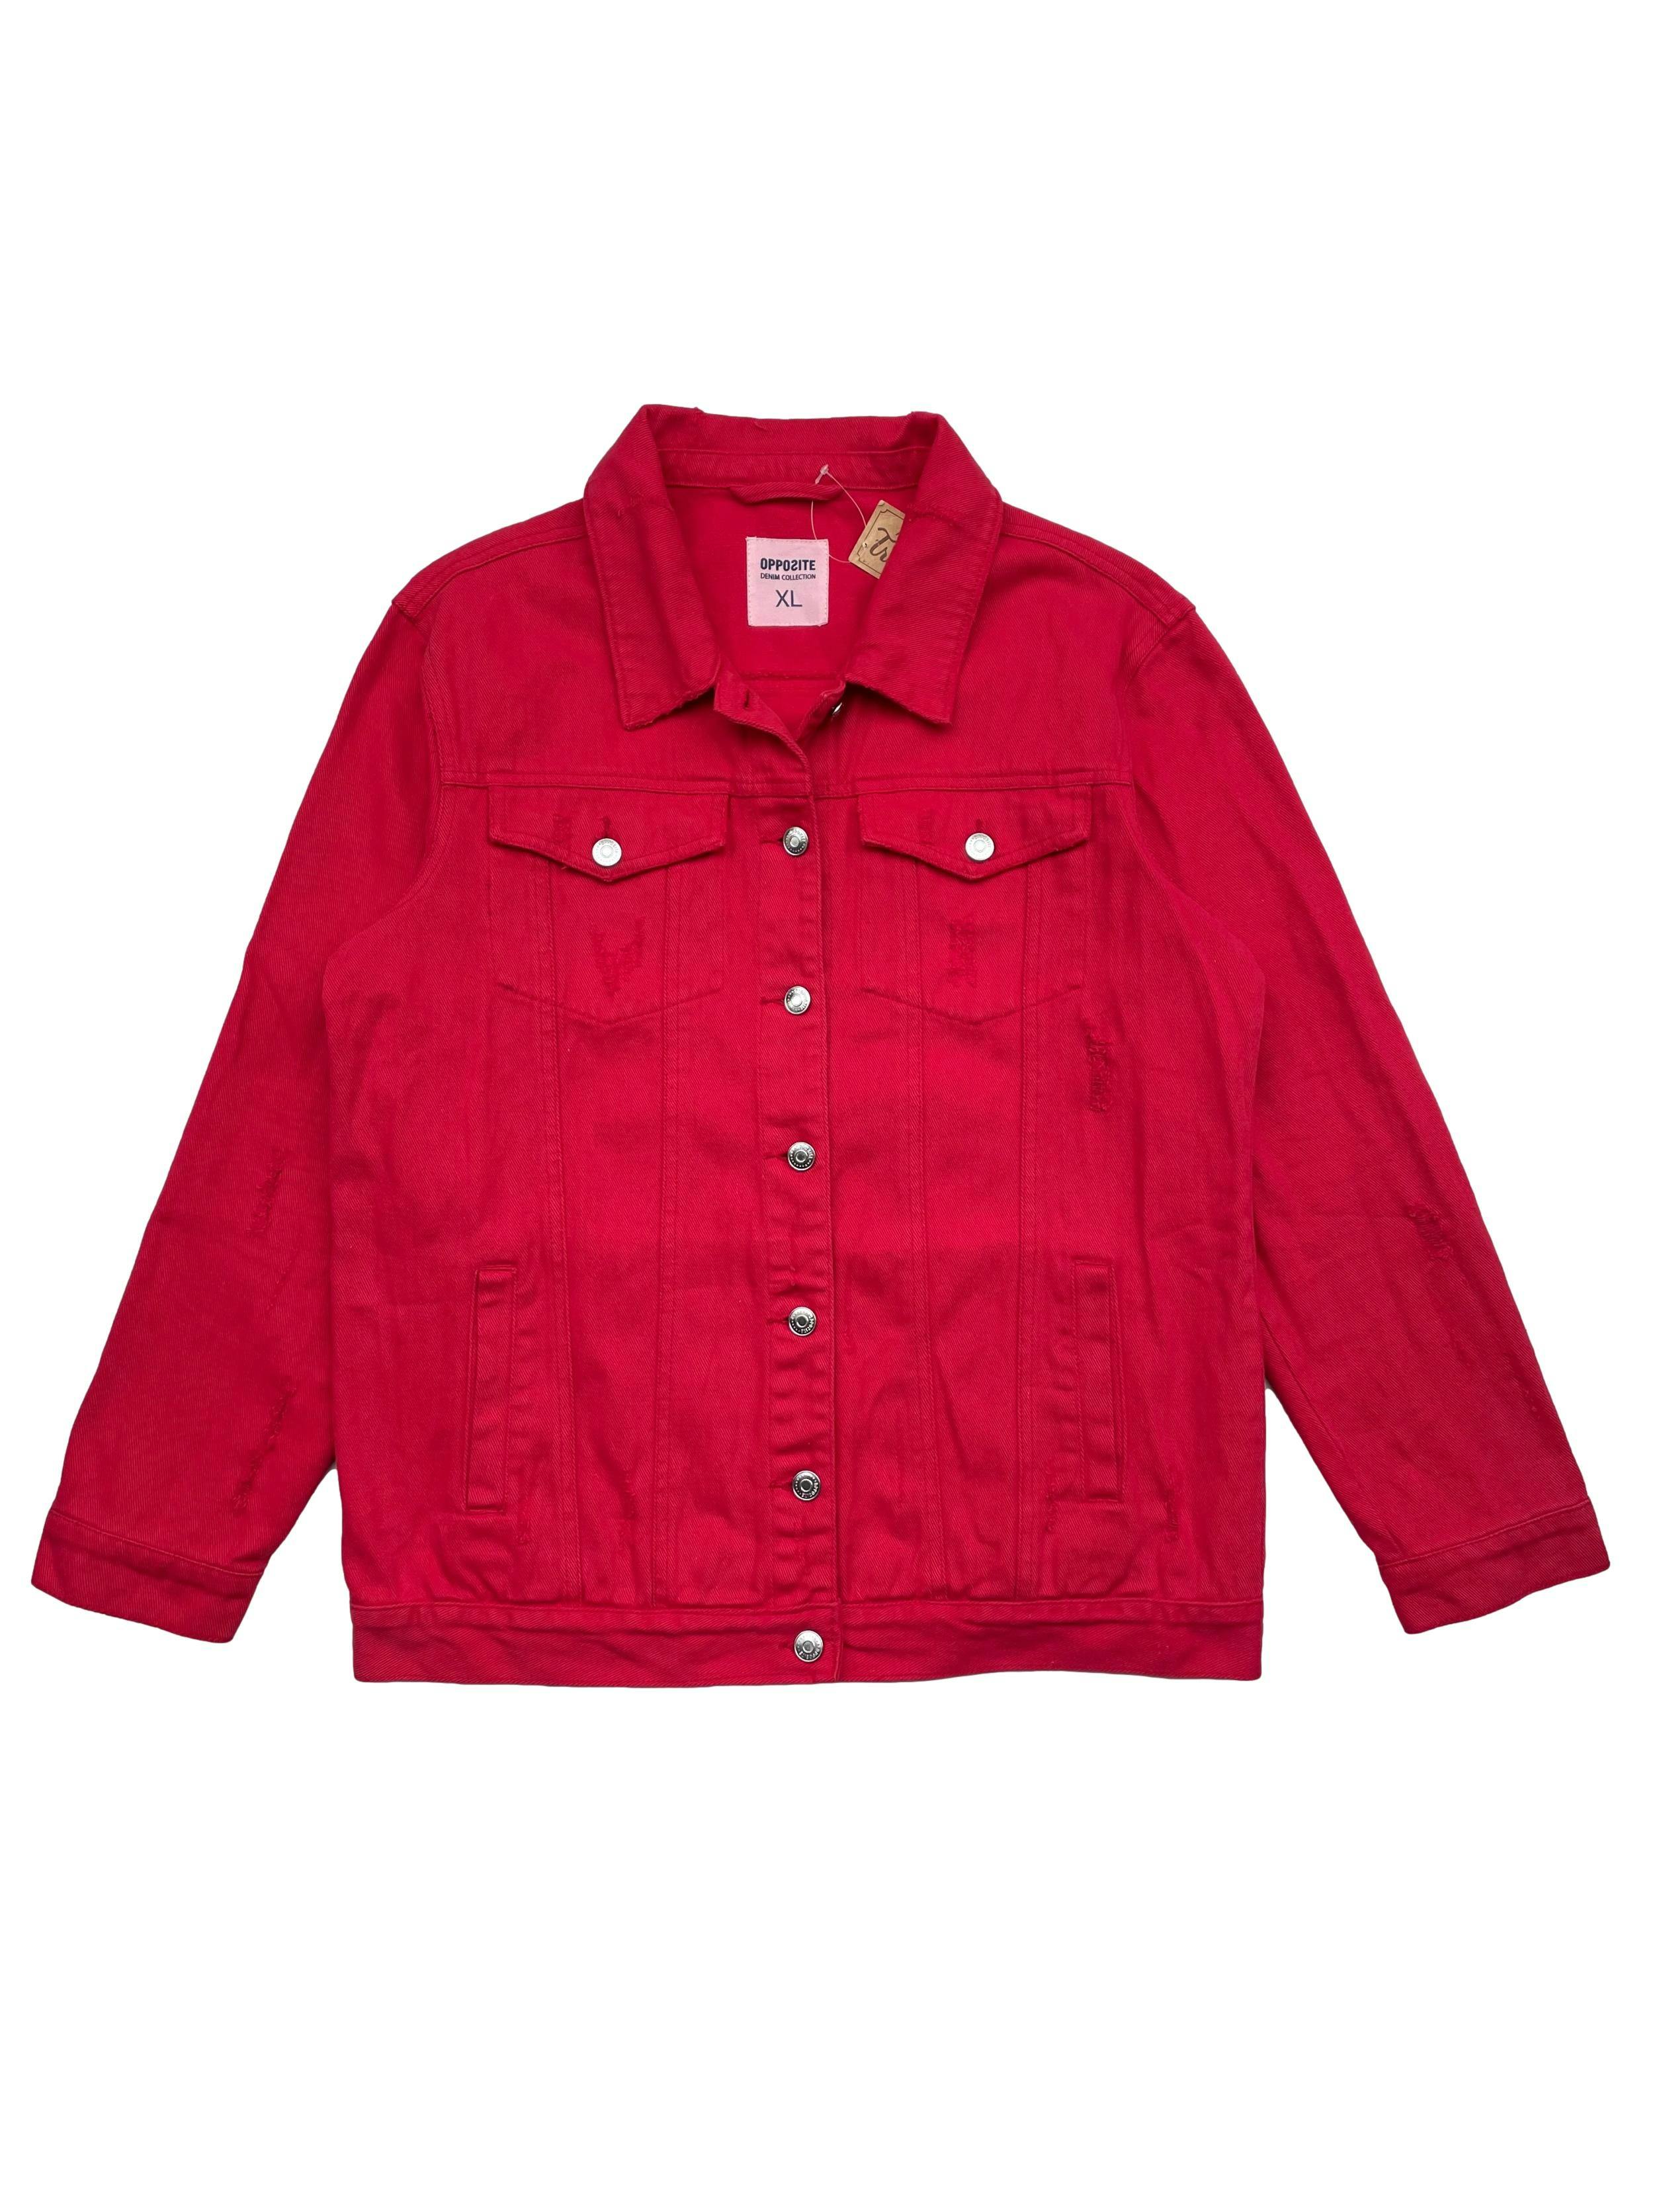 Casasa Opposite roja de jean 100%  algodón, con rasgados, botones metálicos y cuatro bolsillos. Hombros 49cm Busto 110cm Largo 64cm.